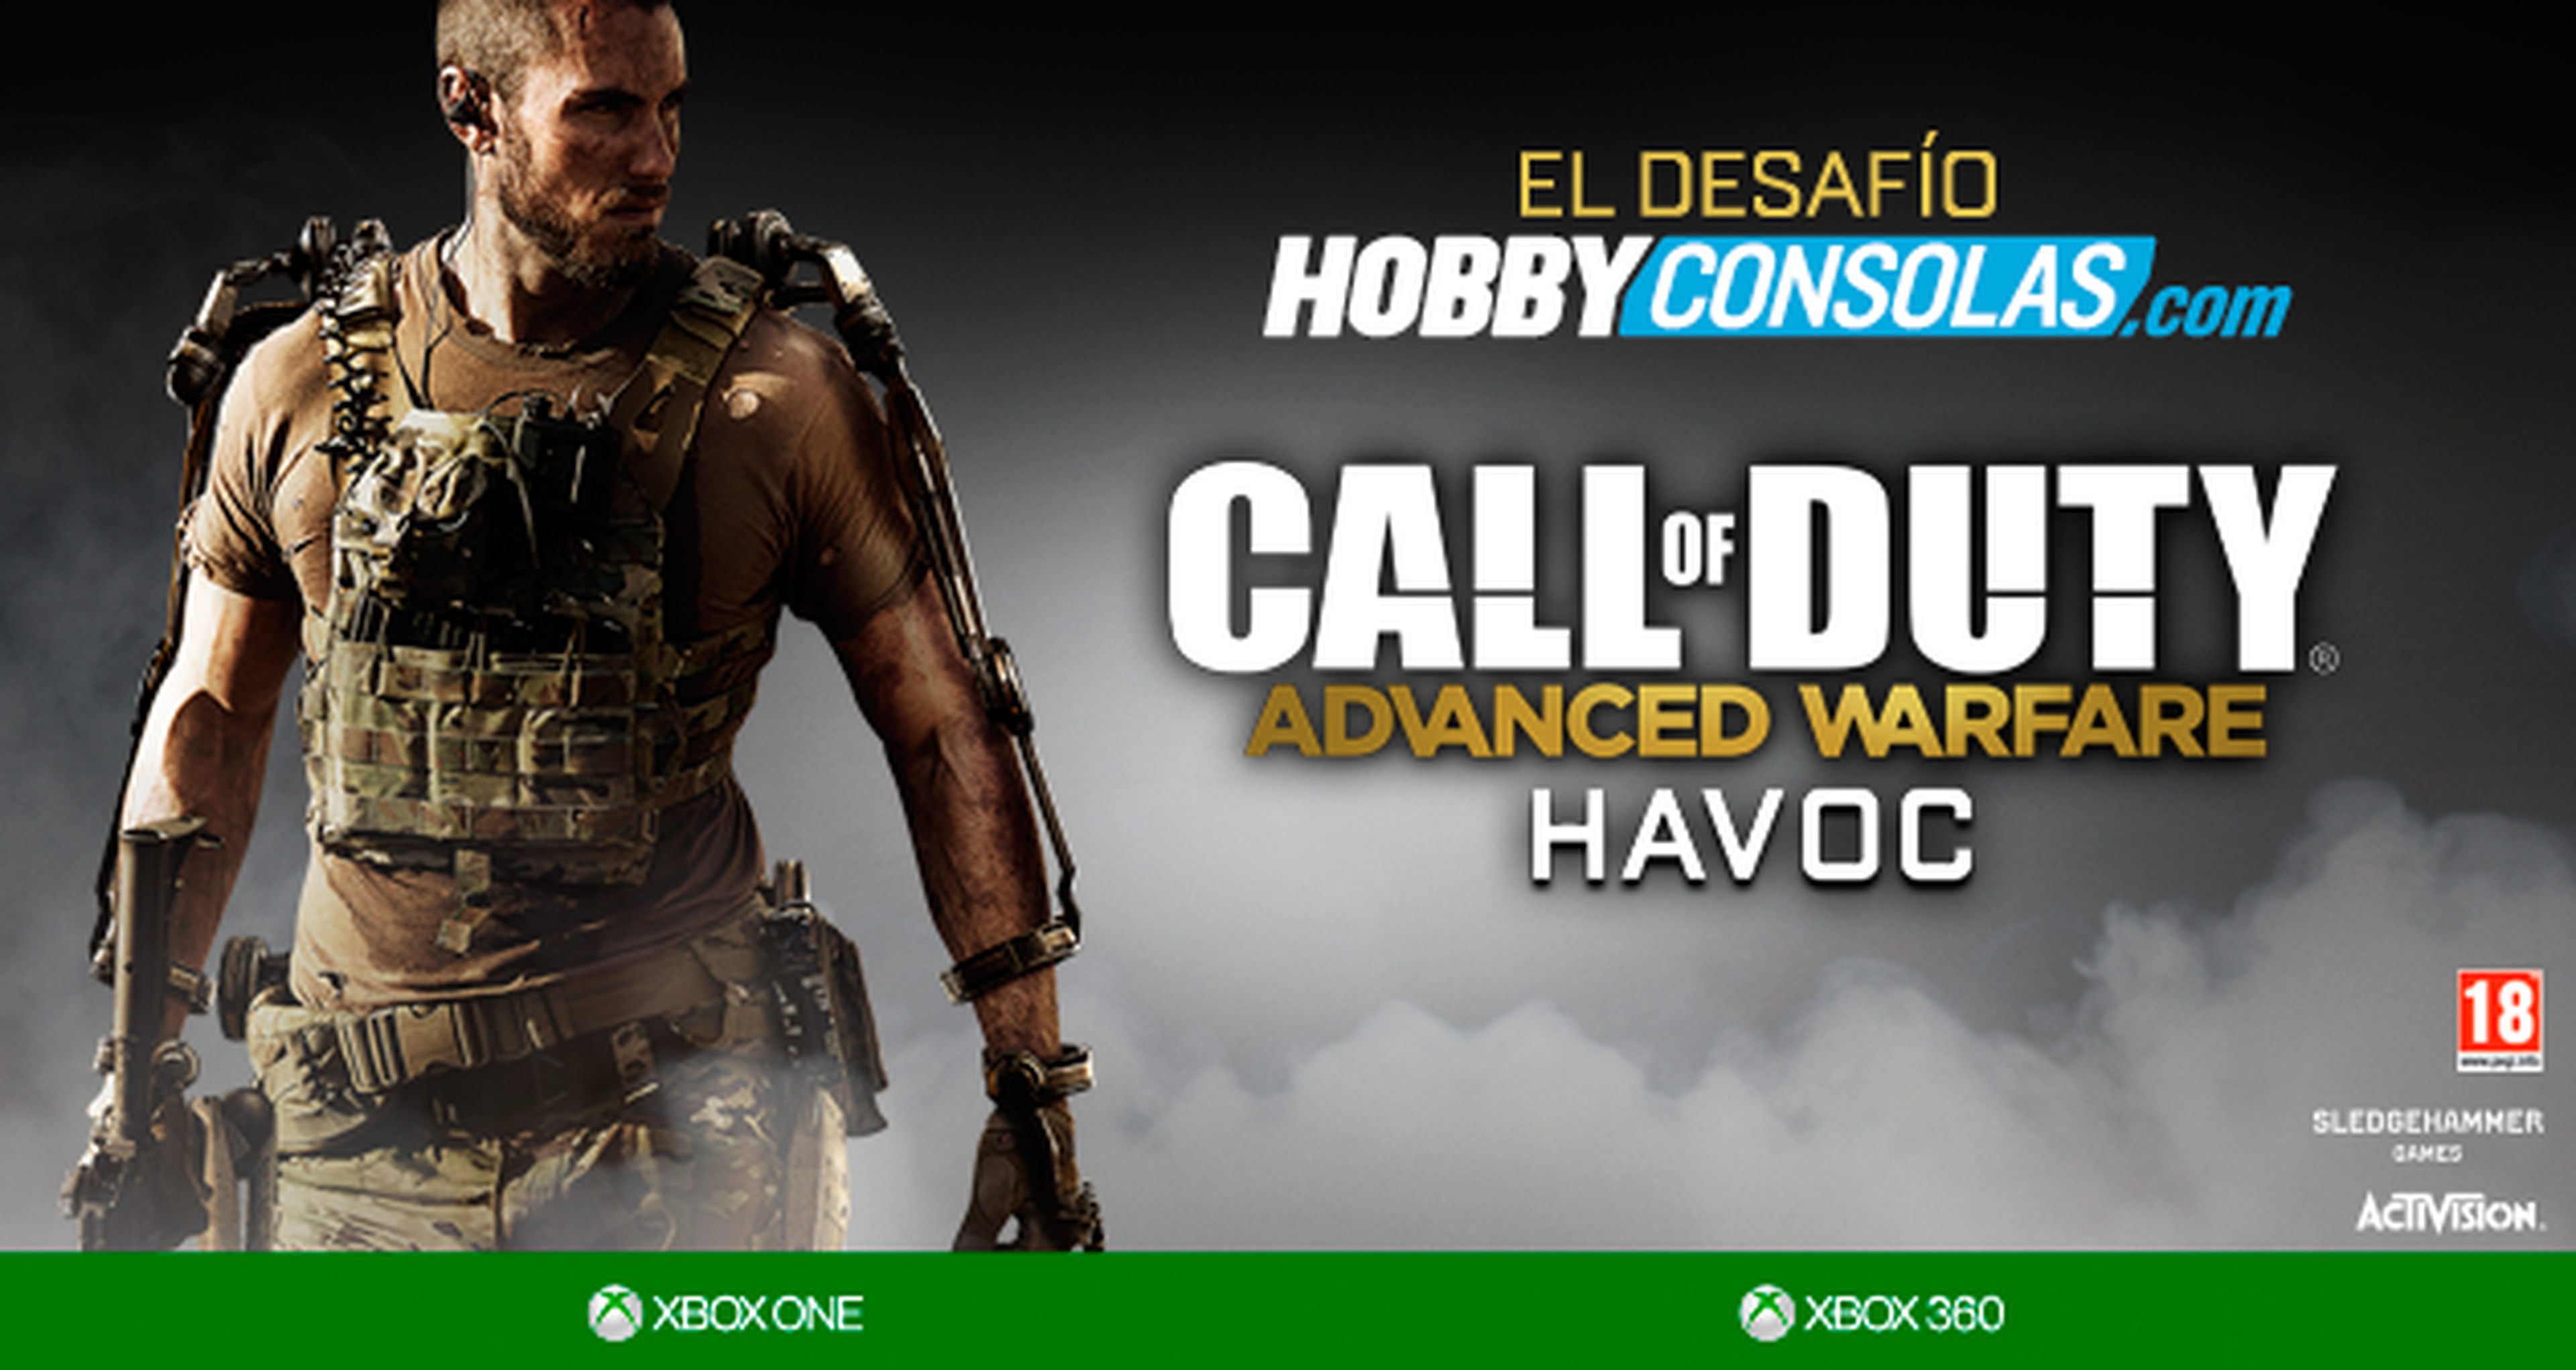 Call of Duty: Advanced Warfare, resultado del Desafío Hobbyconsolas